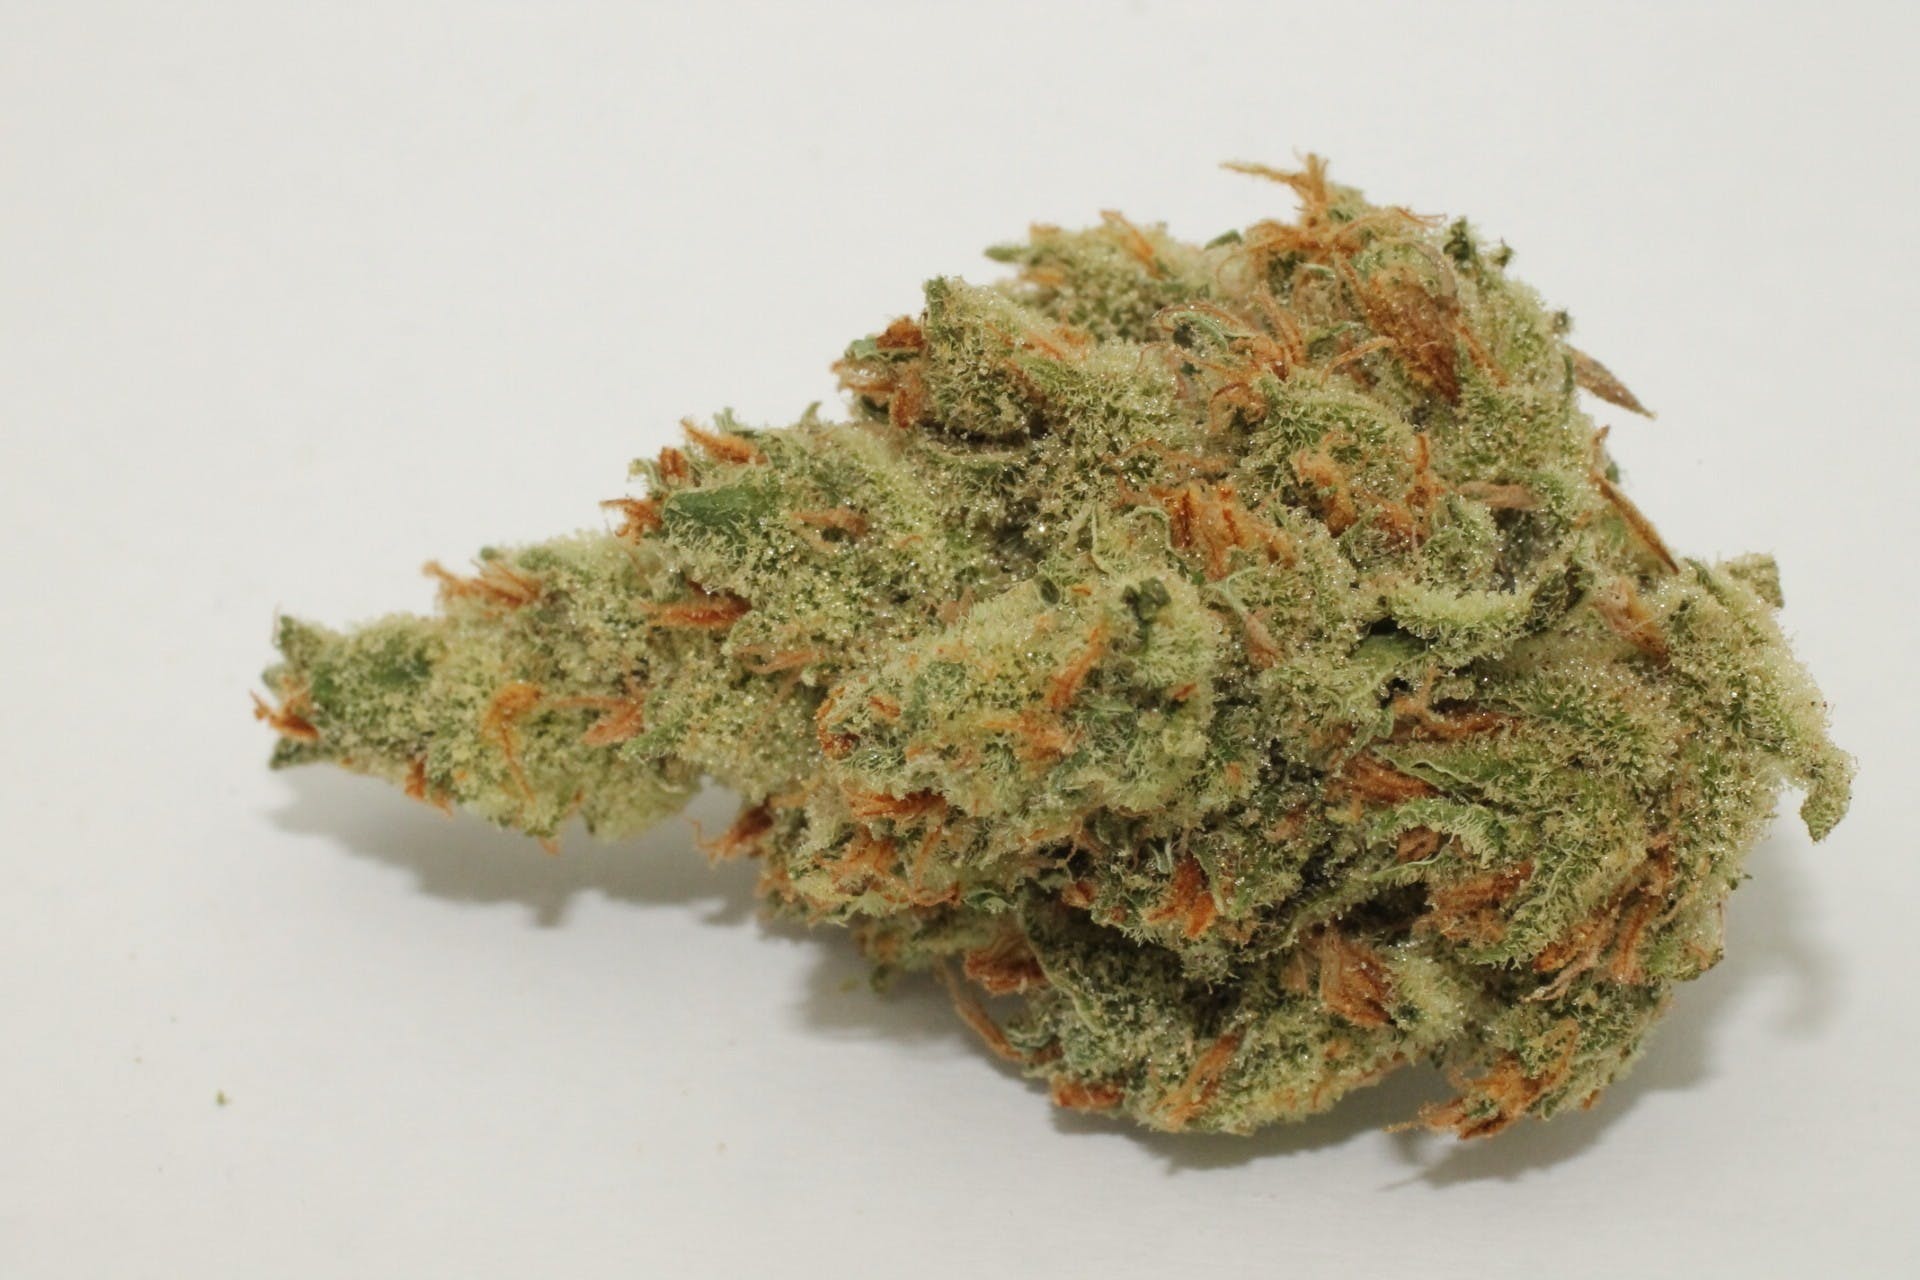 marijuana-dispensaries-bakersfields-best-20-cap-in-bakersfield-topshelf-durban-poison-2oz270-qp530